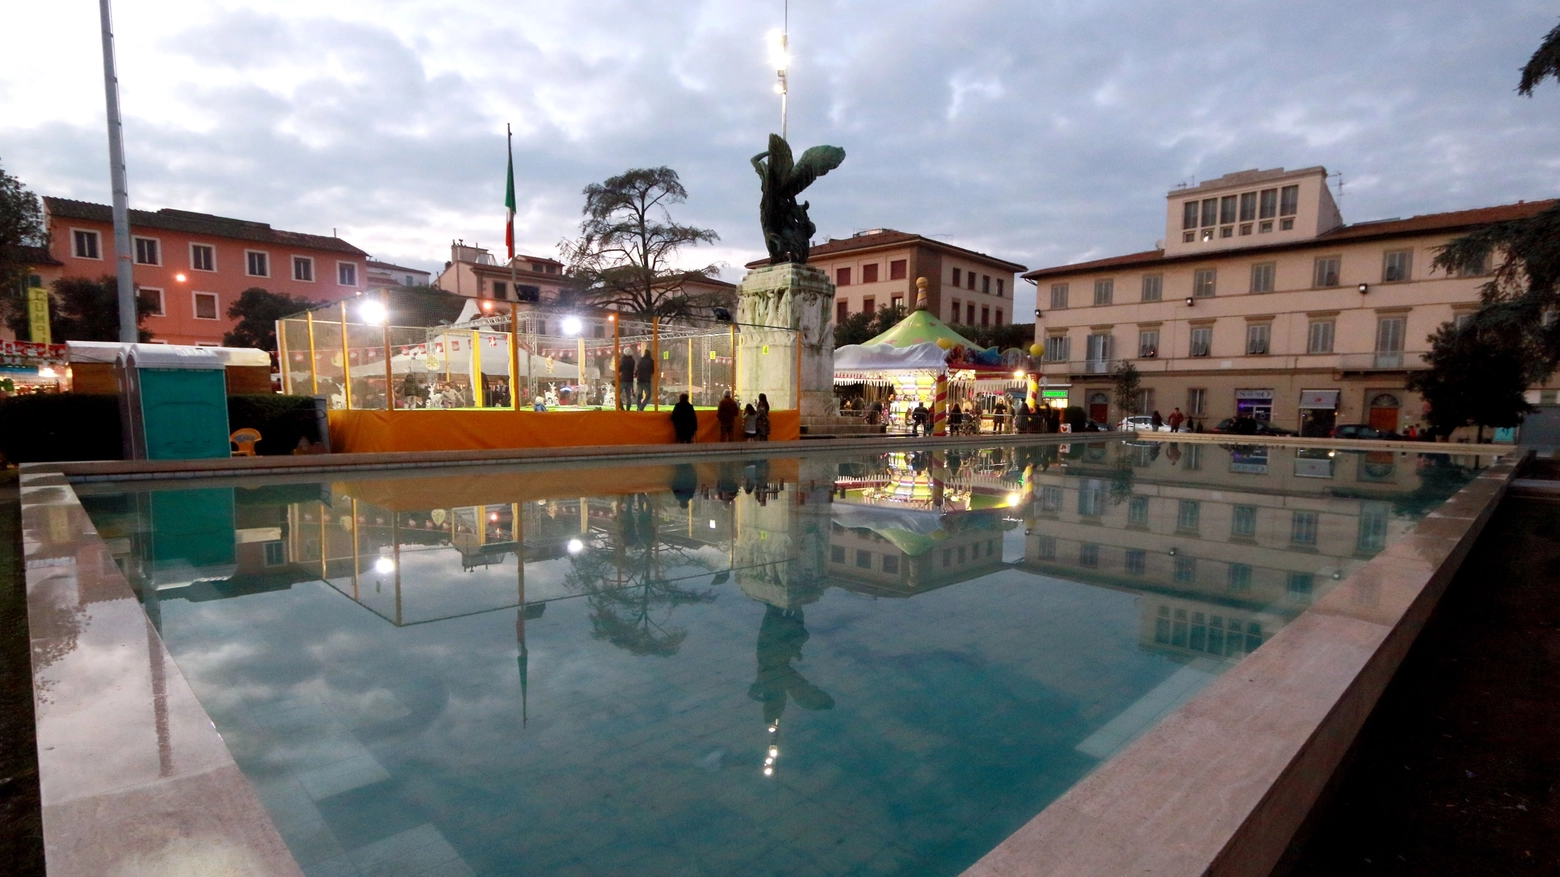 La fontana di piazza della Vittoria. Foto Gianni Nucci/Fotocronache Germogli